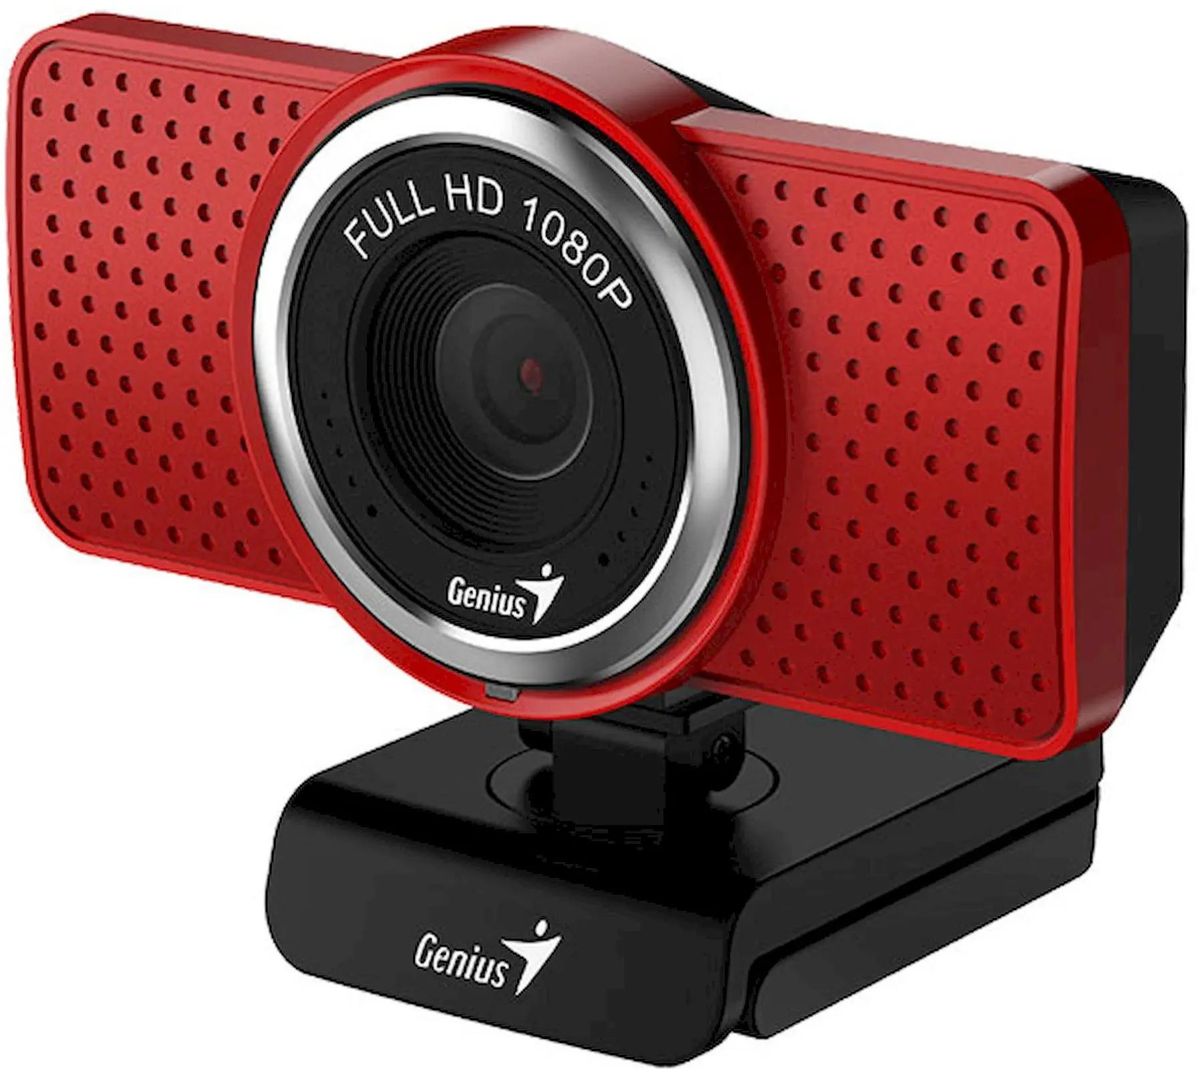 Вебкамера Genius ECam 8000, 2 MP, 1920x1080, встроенный микрофон, USB 2.0, красный/черный (32200001407), цвет красный/черный